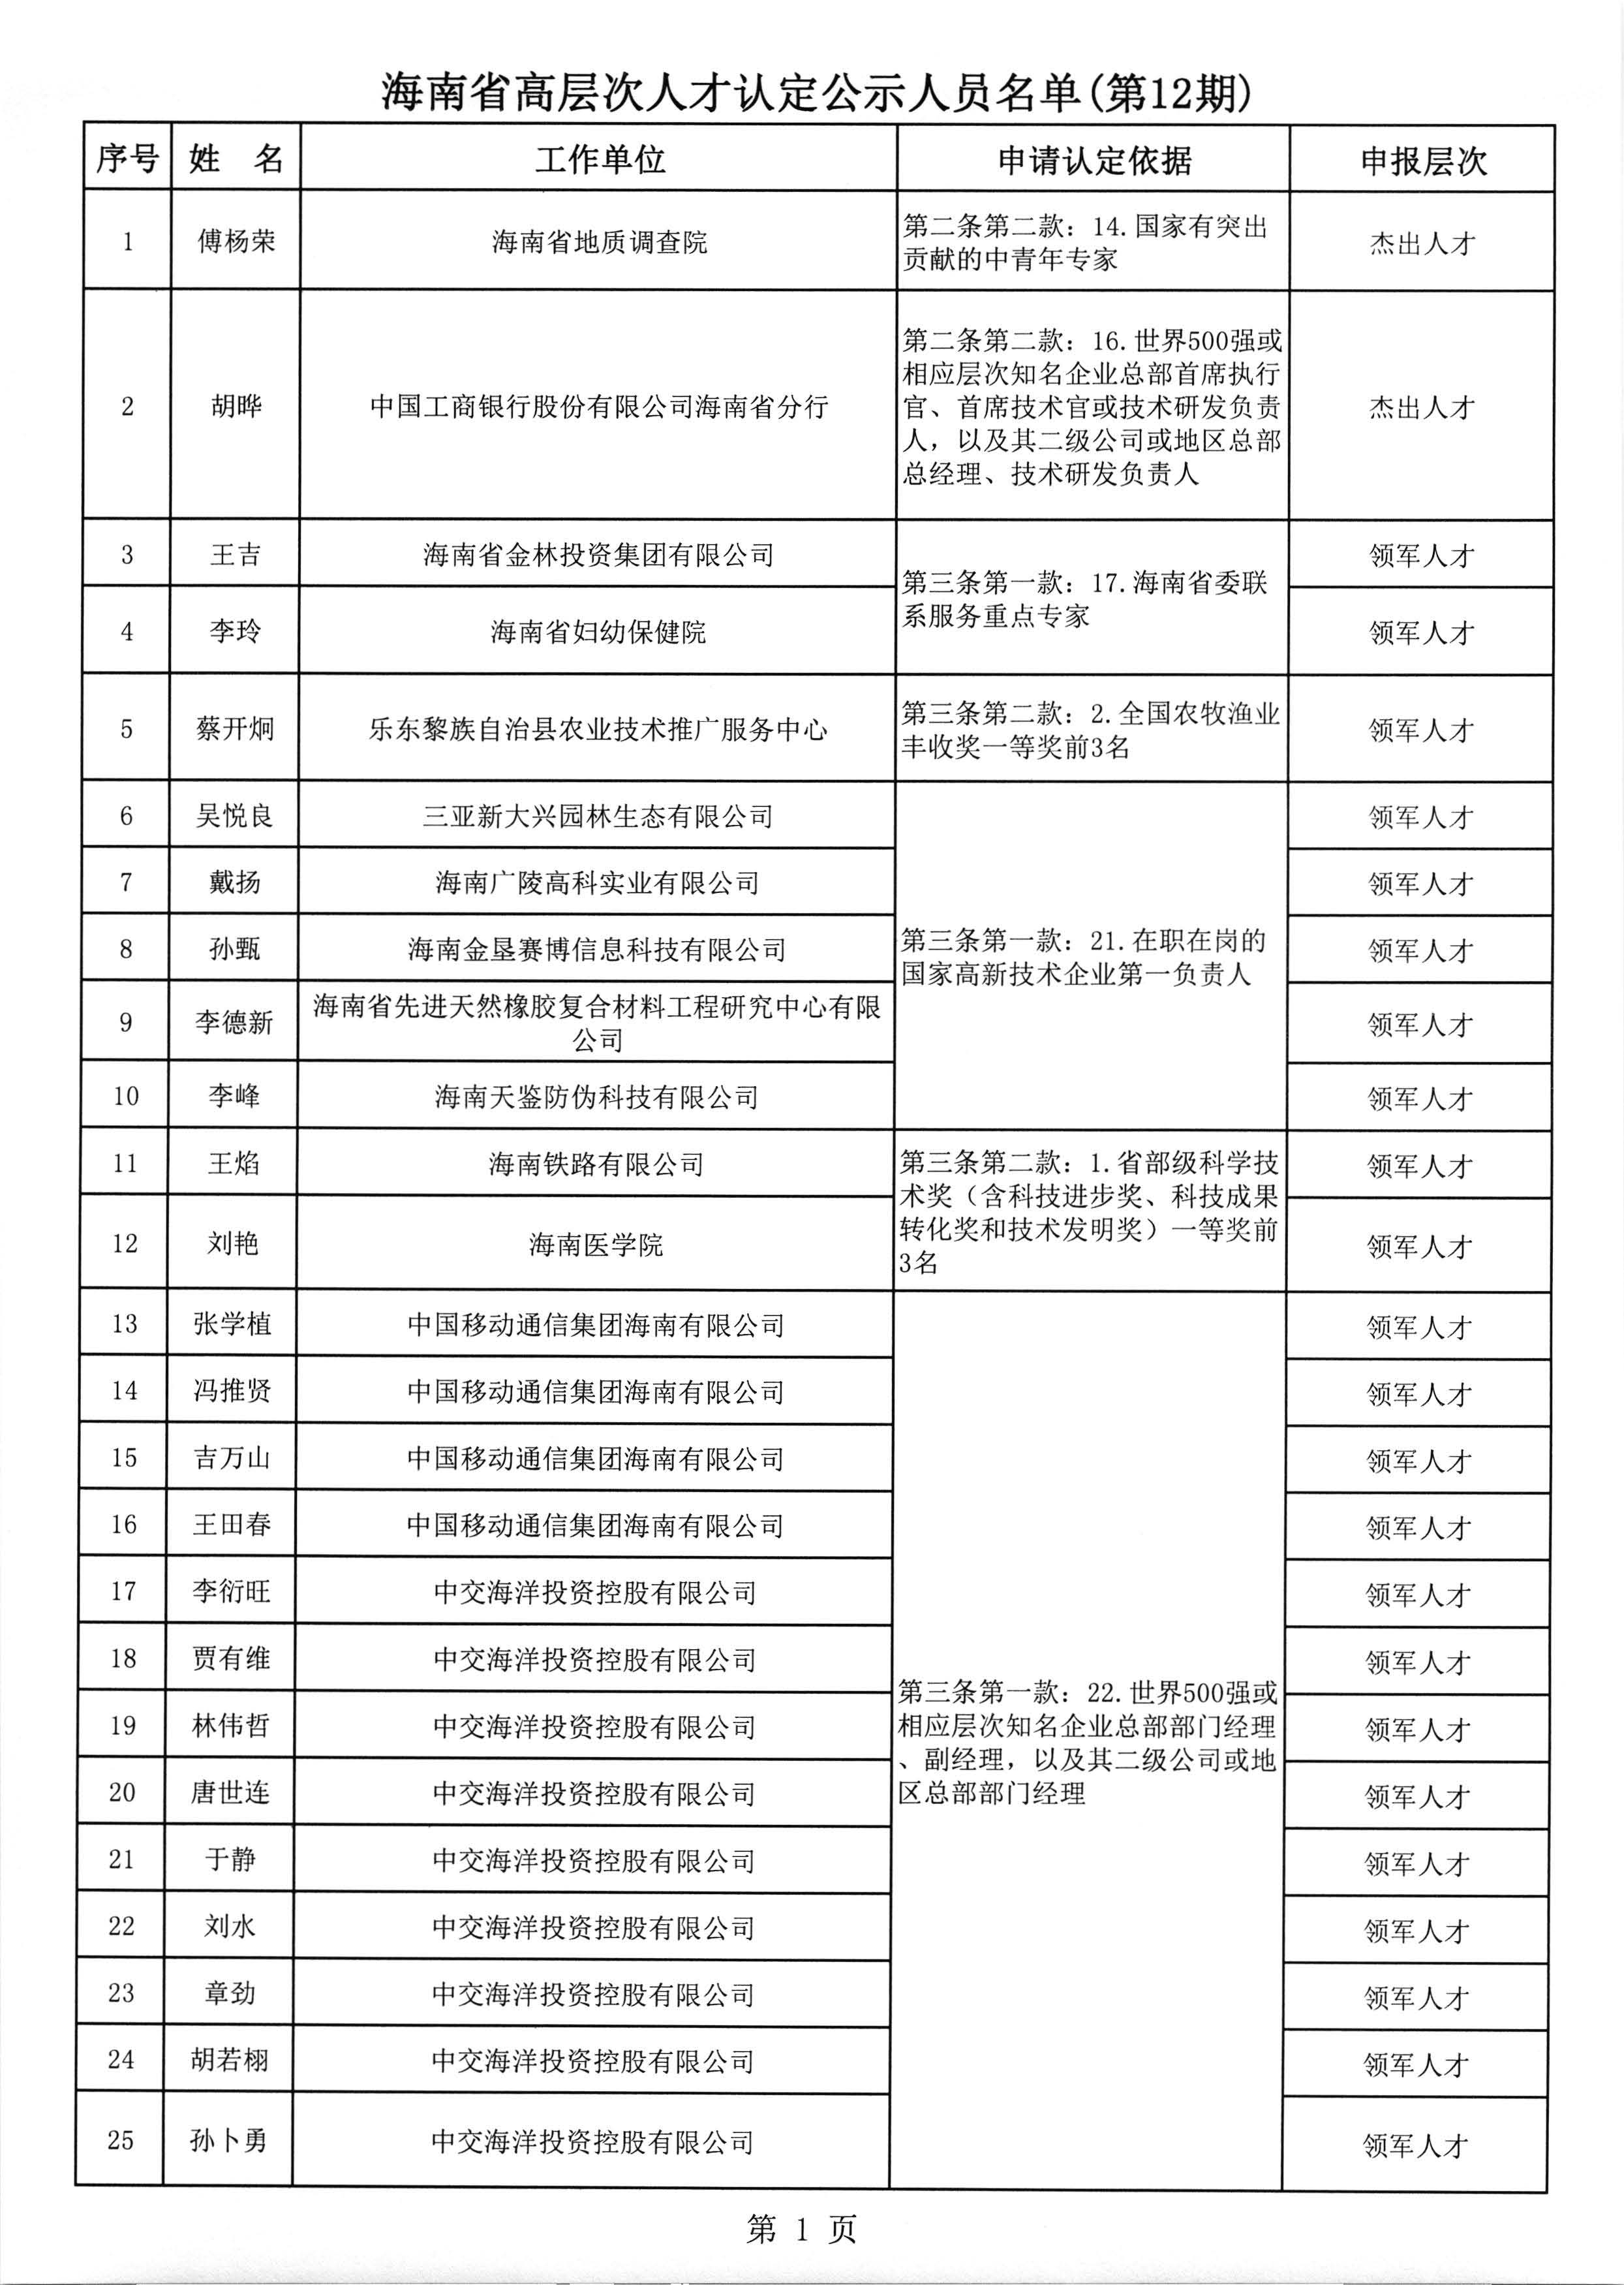 海南省高层次人才认定公示人员名单(第12期)_页面_2